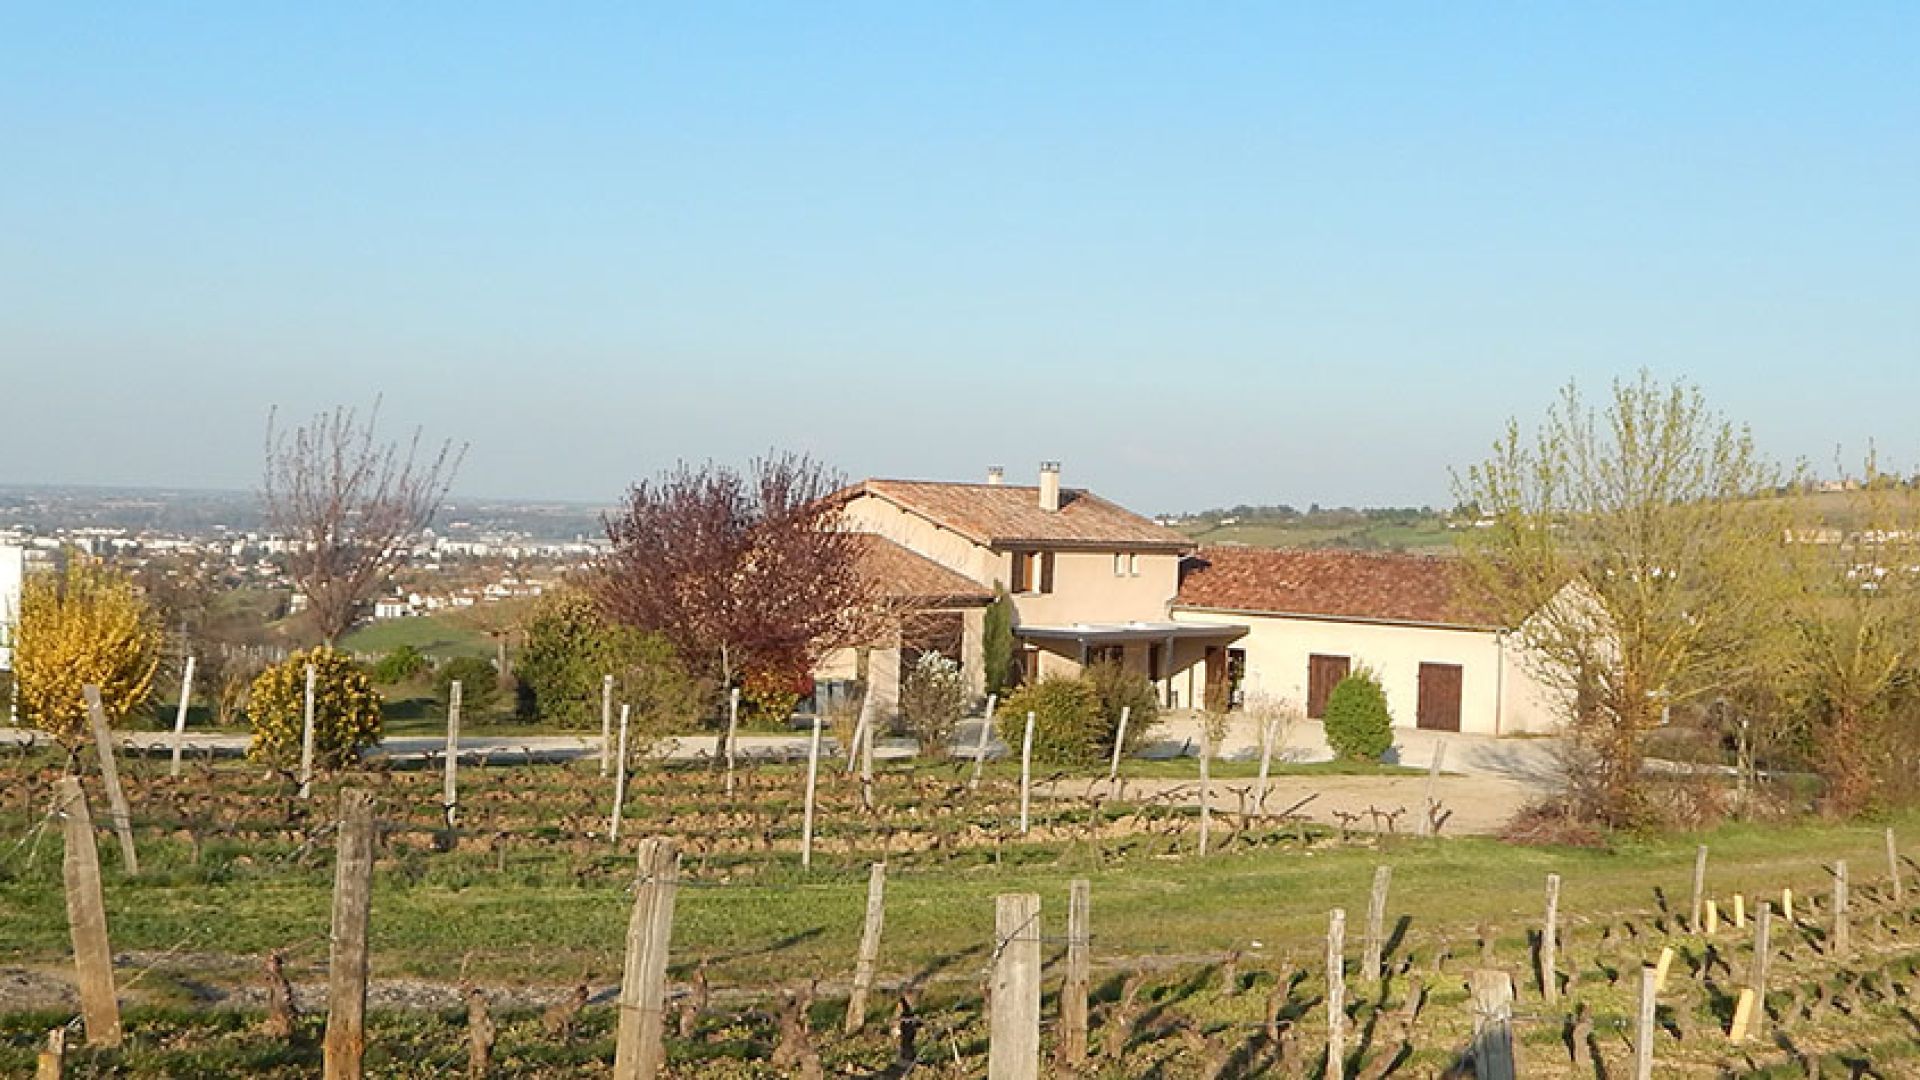 Domaine Berger des Vignes